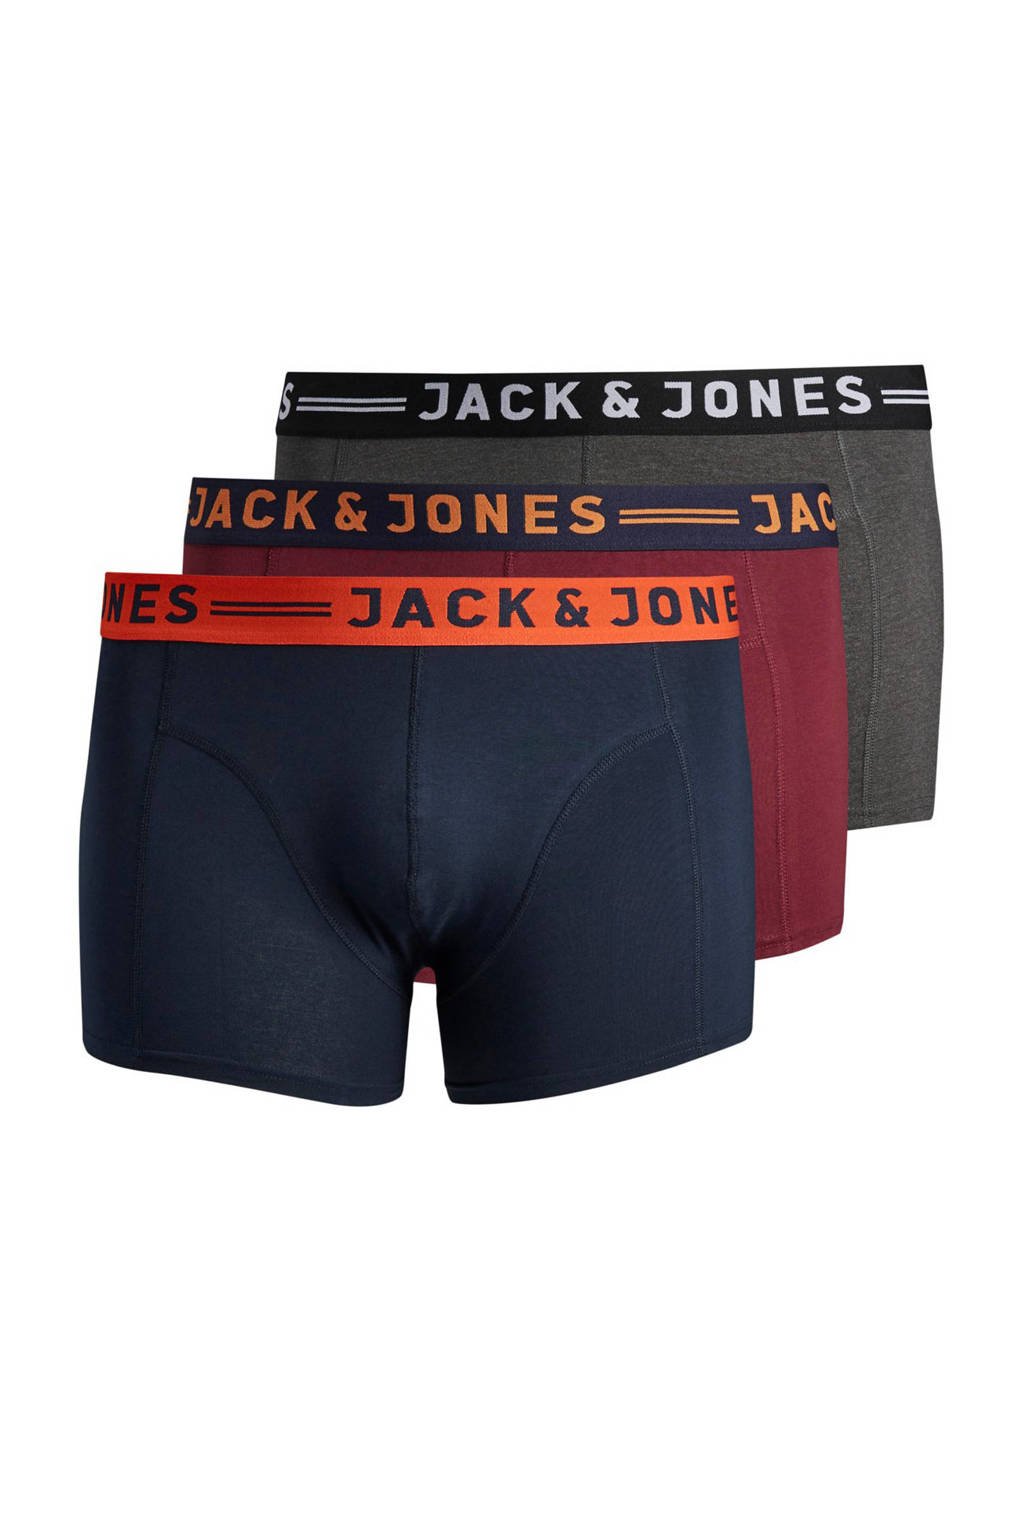 JACK & JONES PLUS SIZE boxershort JACLICHFIELD (set van 3)